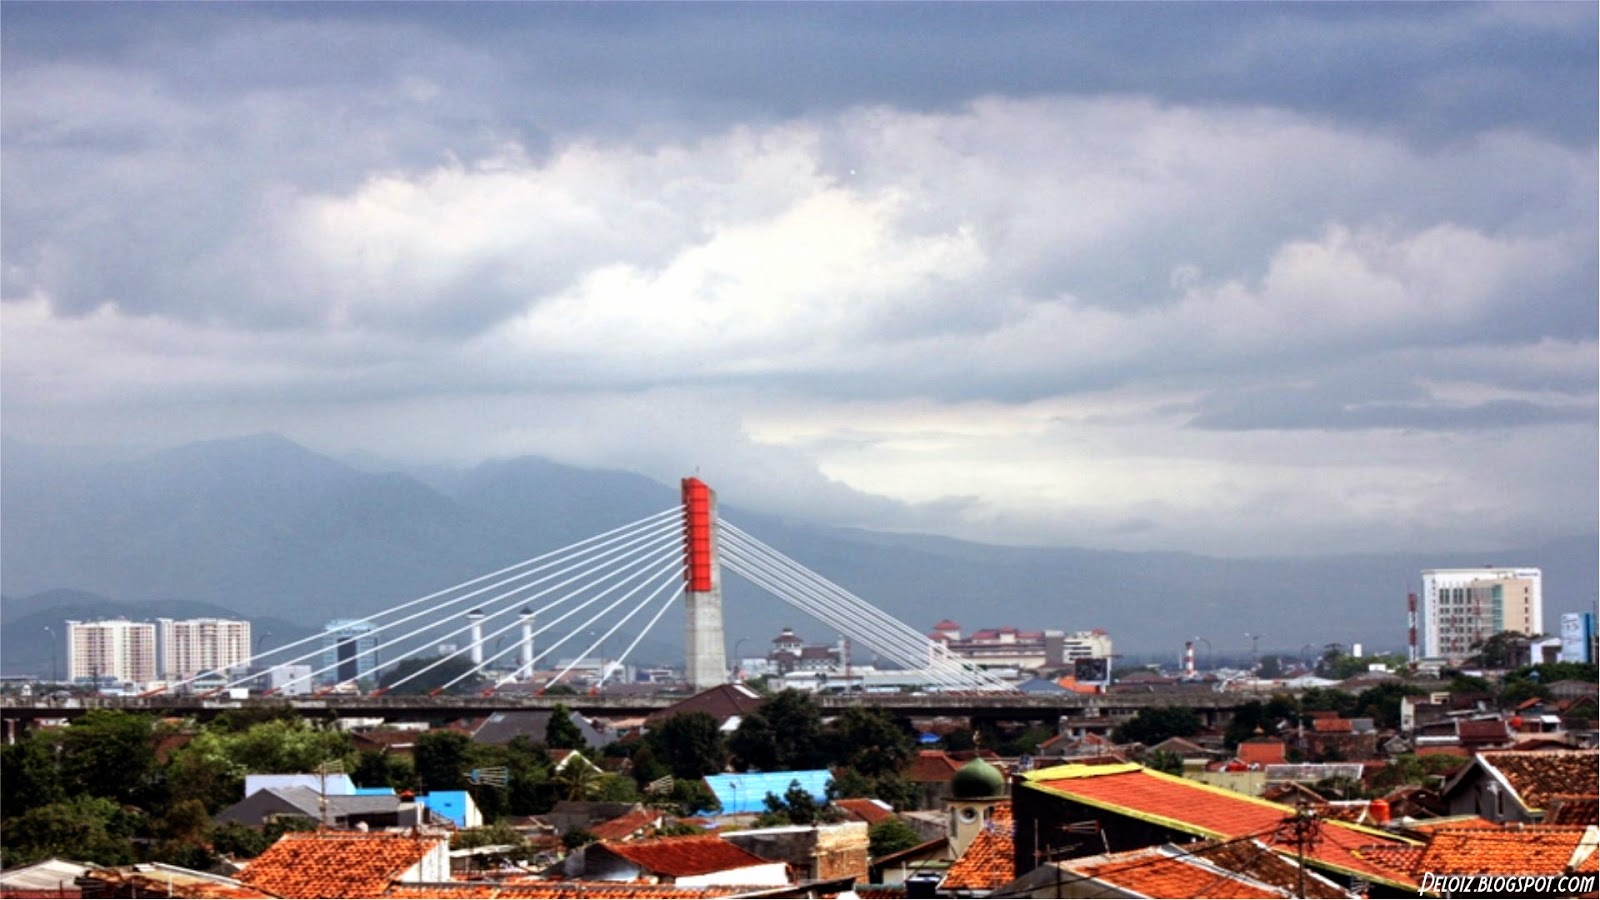 papier peint kota,pont suspendu,zone métropolitaine,pont,route aérienne,zone urbaine